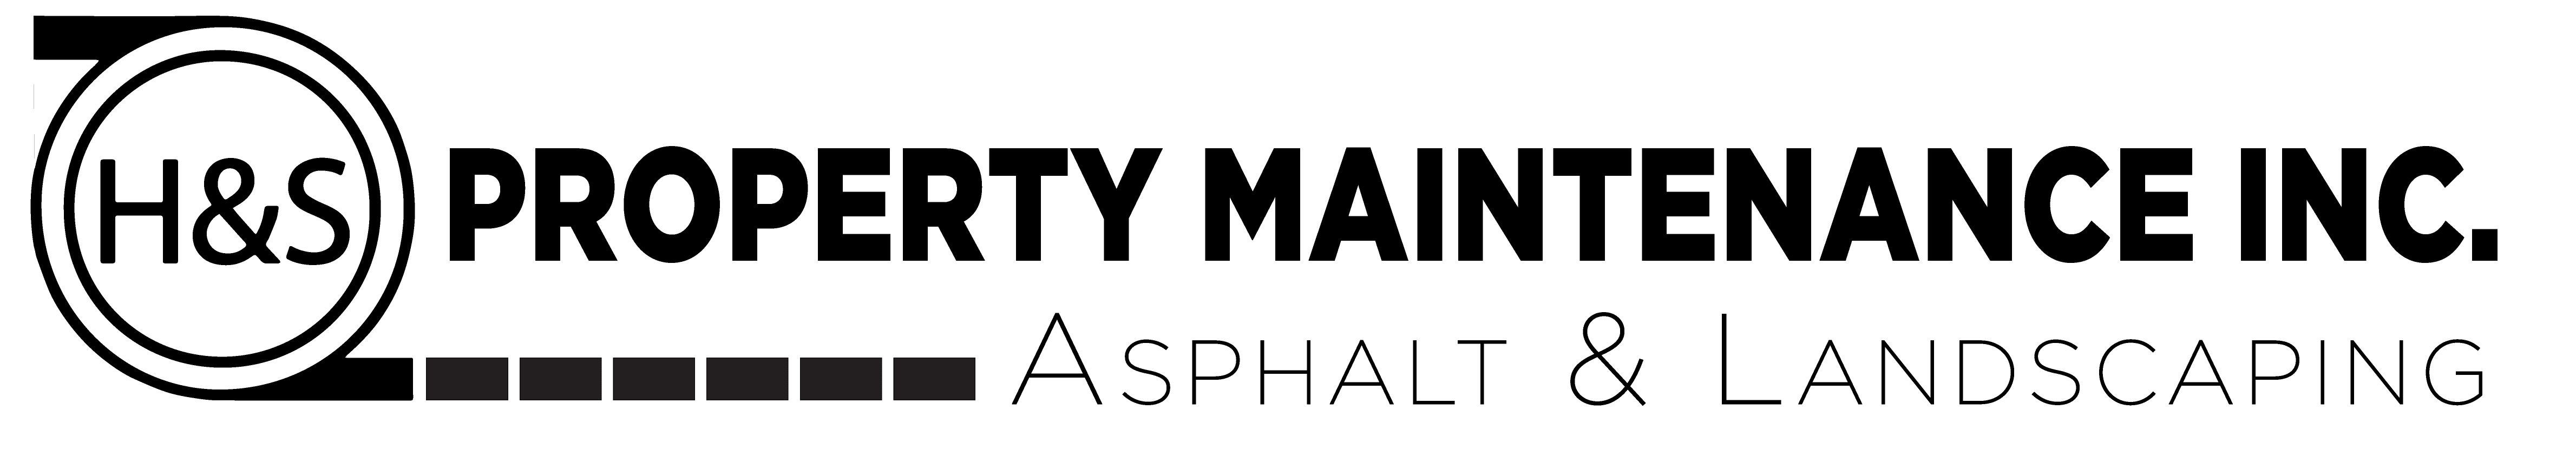 HS Property Maintenance Asphalt & Landscaping